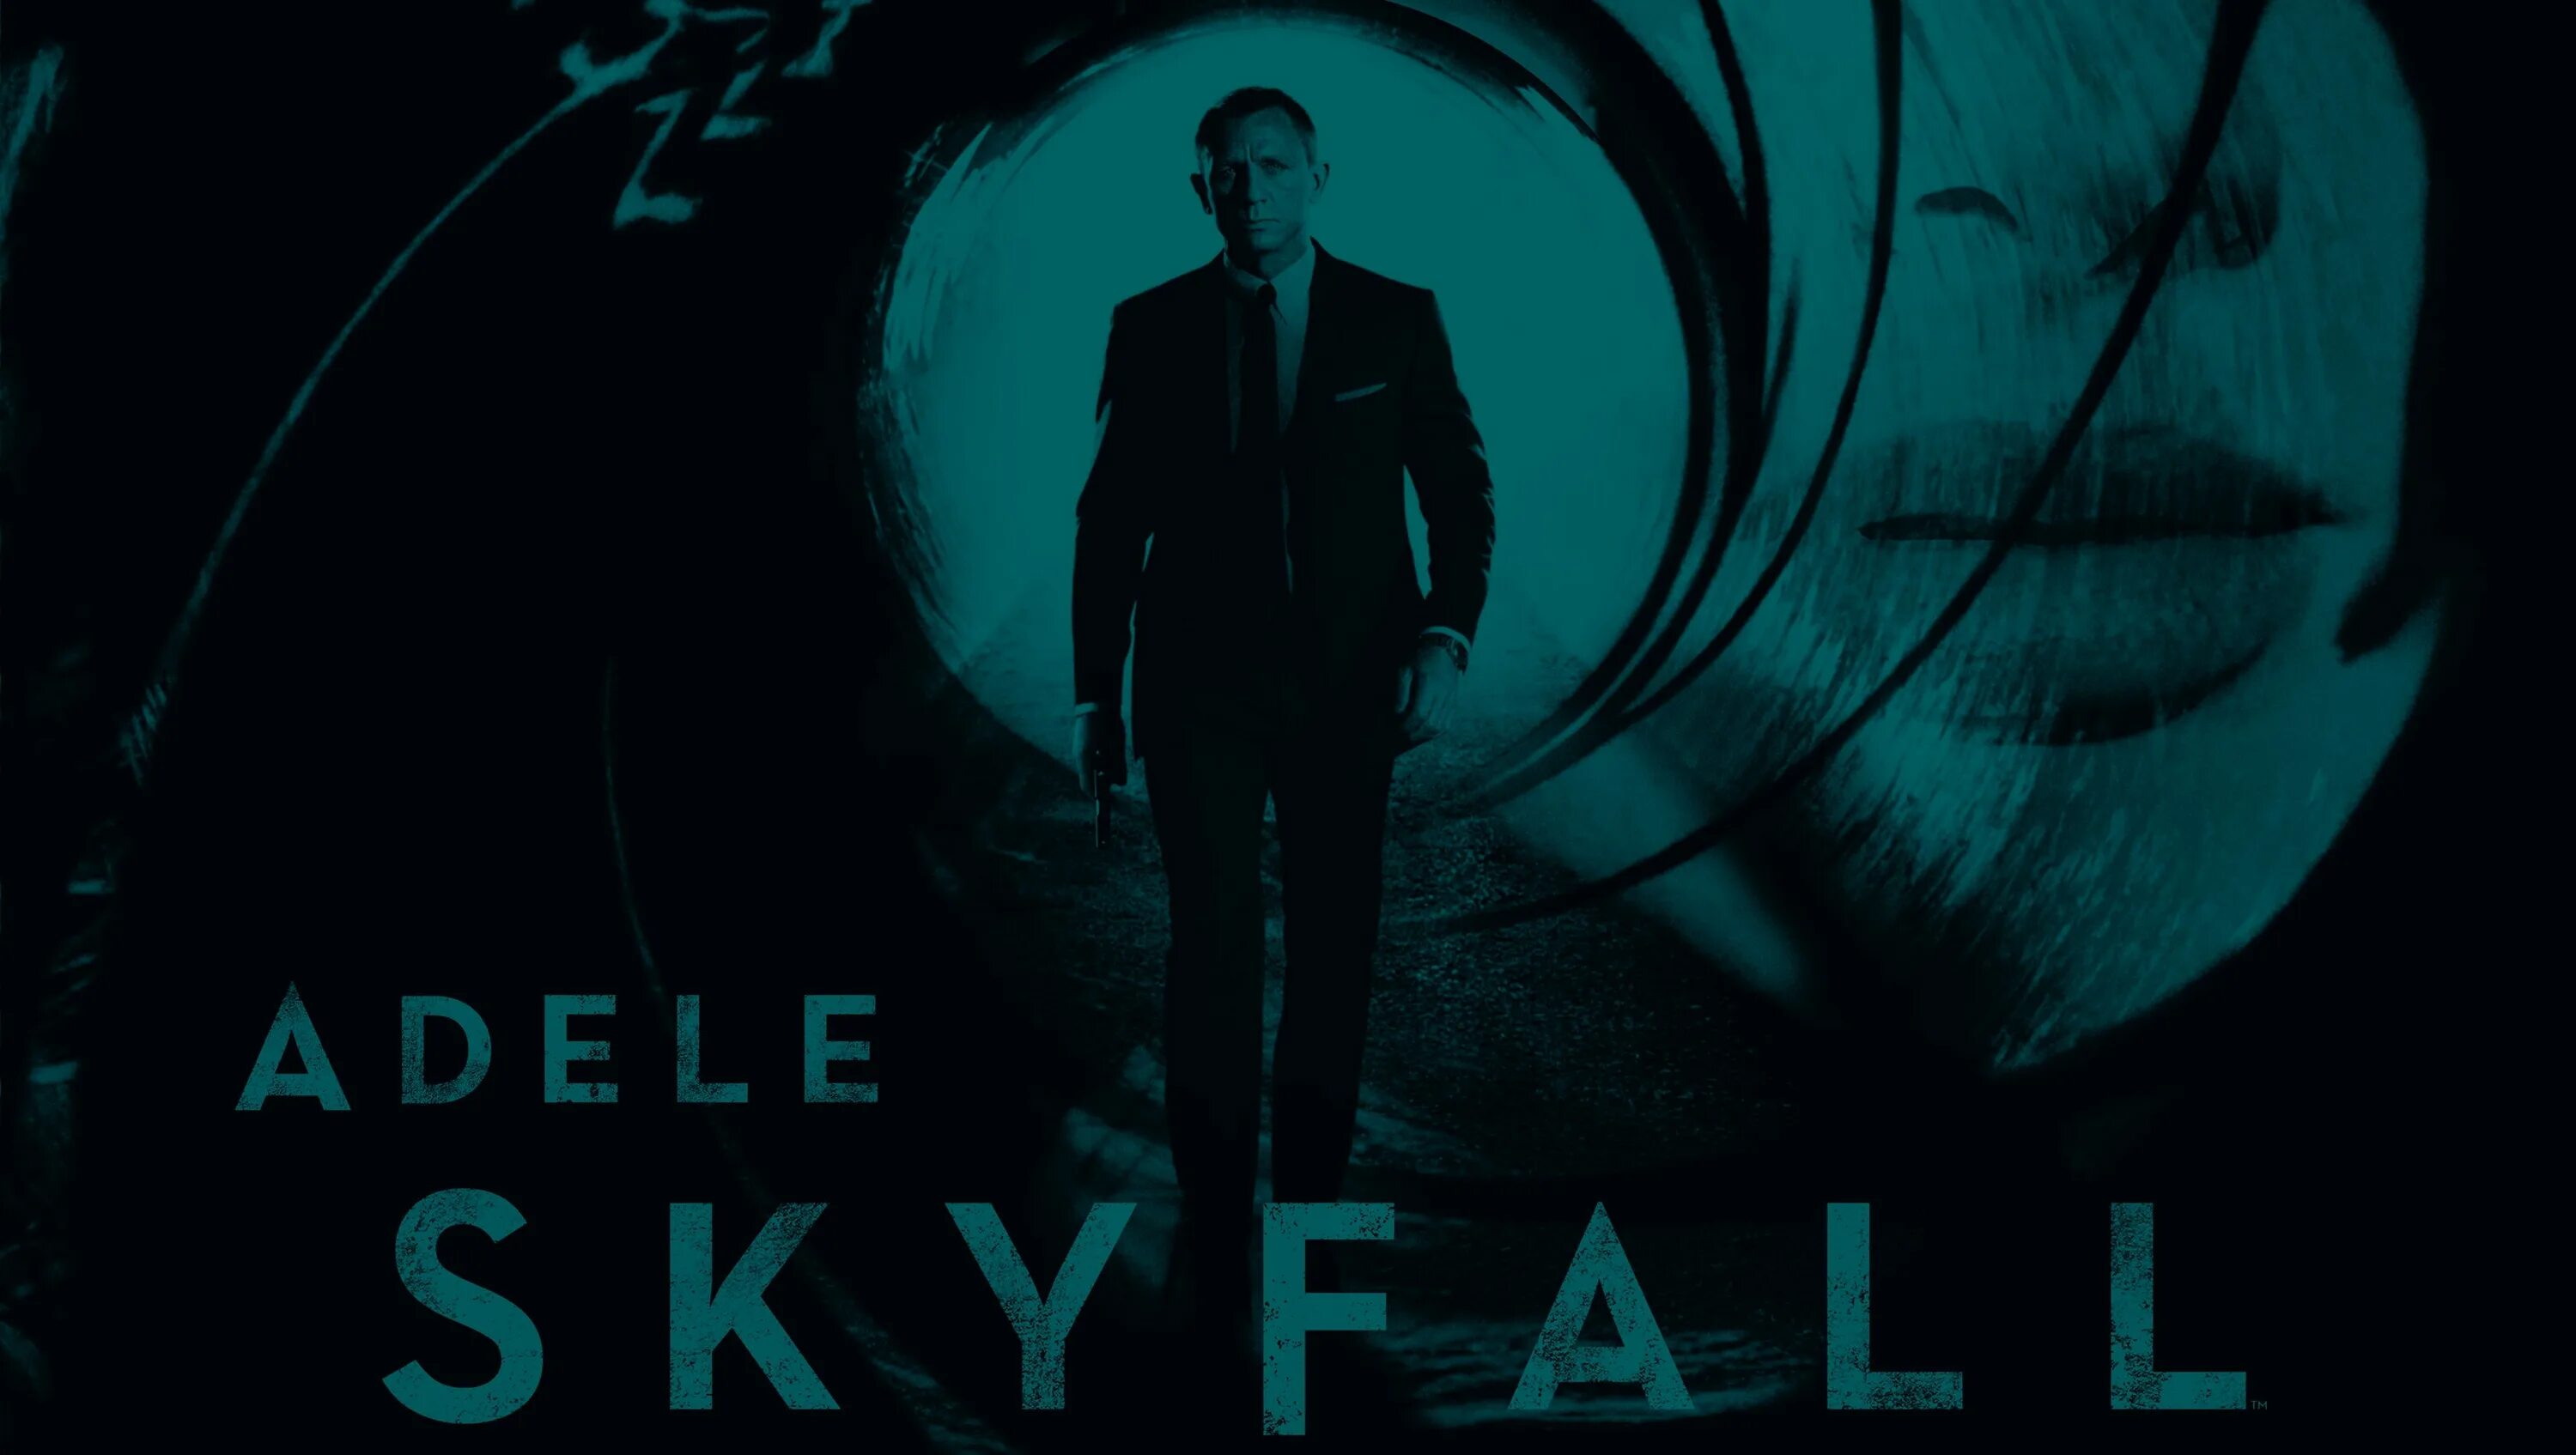 007: Координаты Скайфолл. 007 Skyfall обложка.